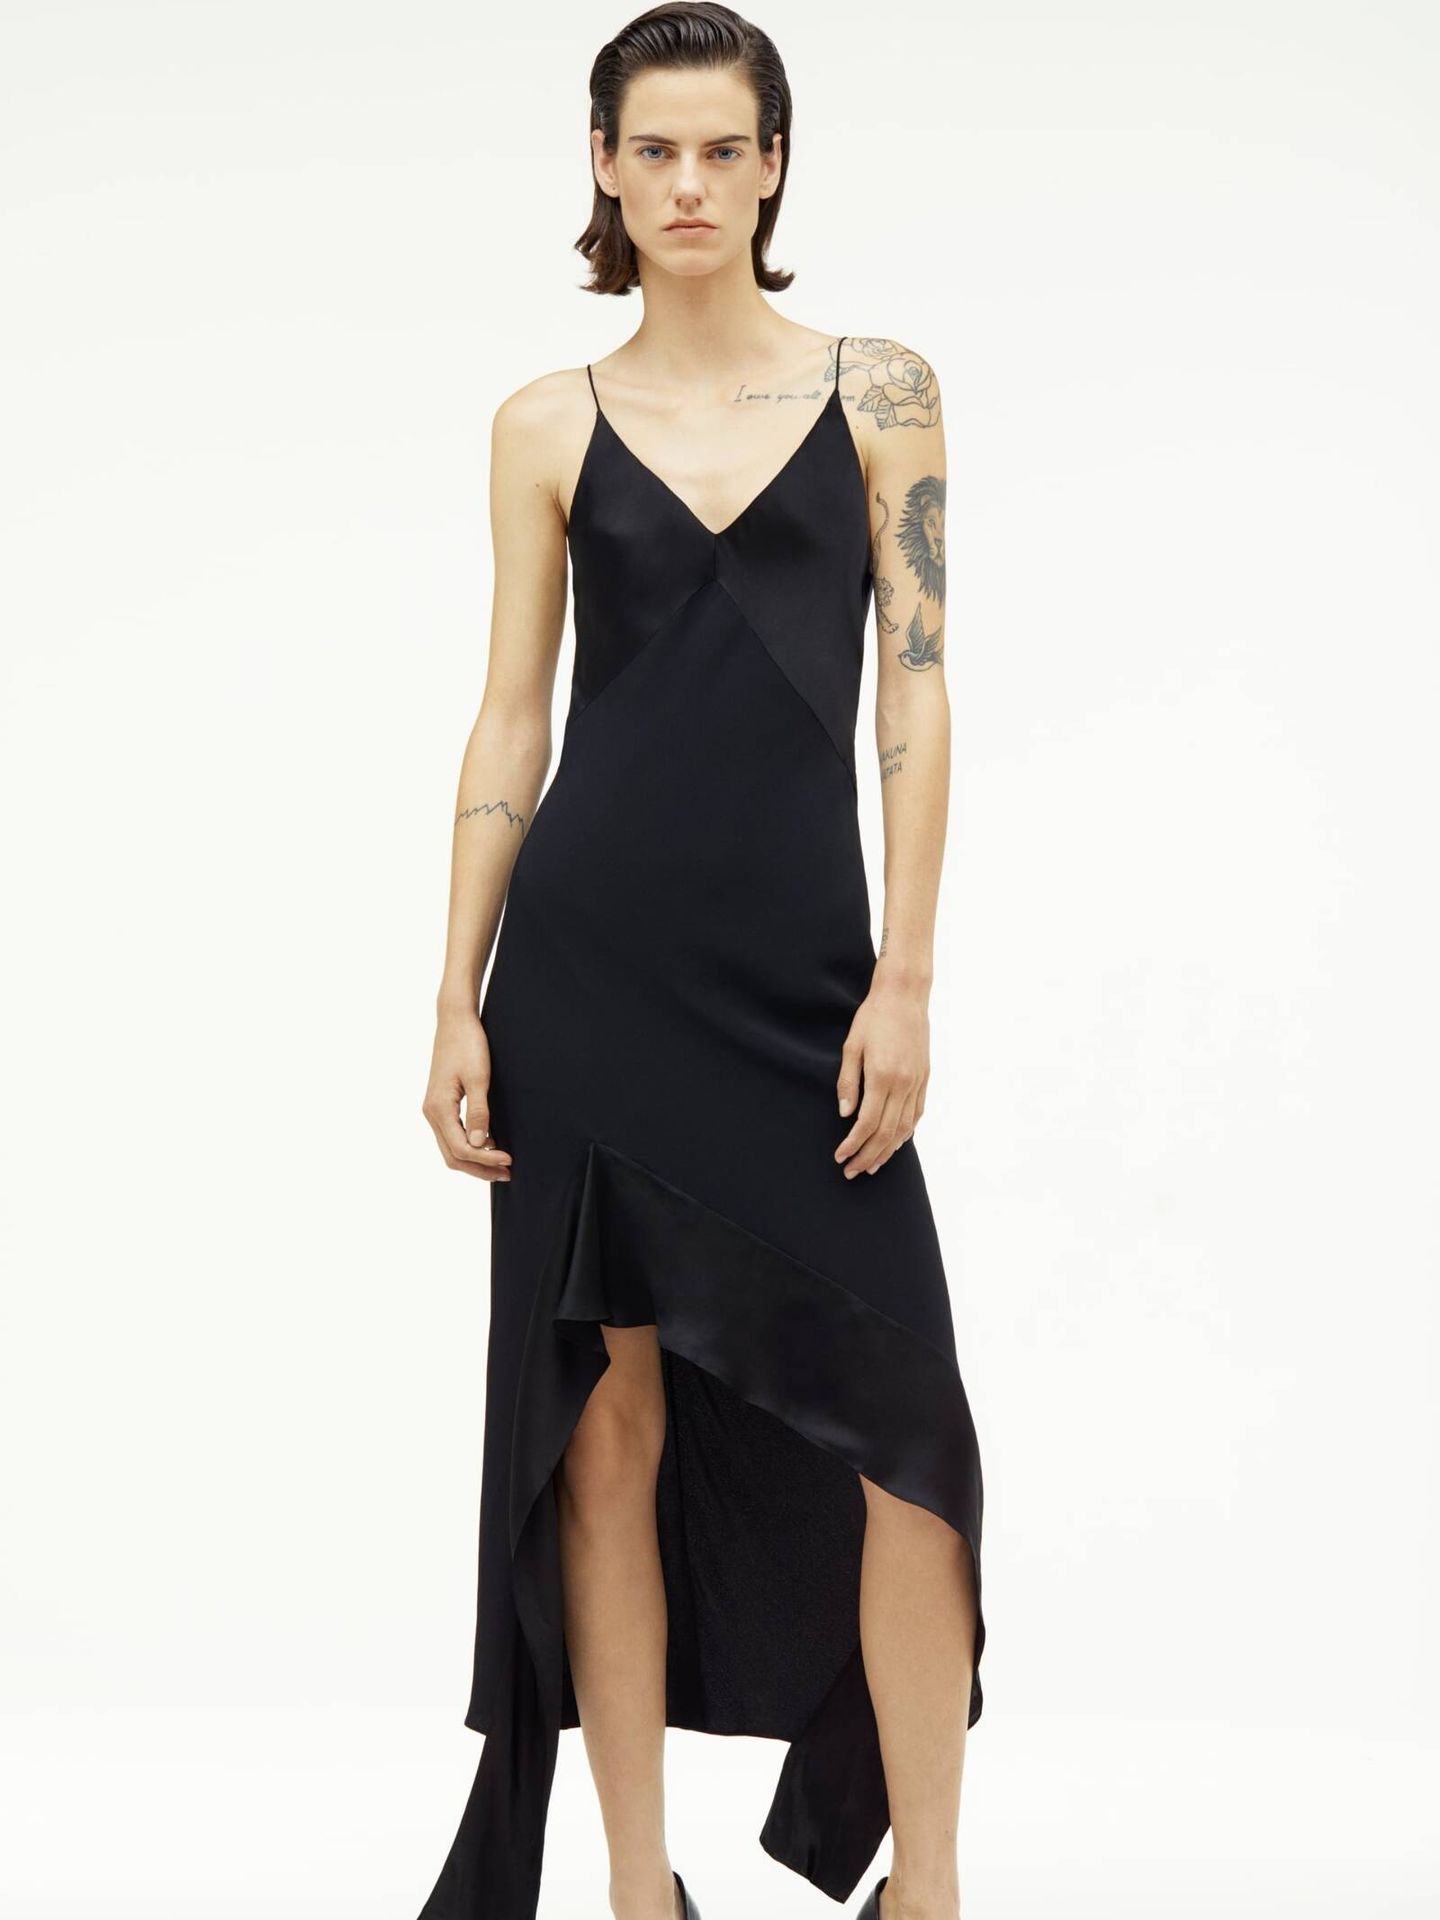 El vestido y capa de Zara que ha llevado Marta Ortega y es ideal para las fiestas. (Cortesía/Zara)